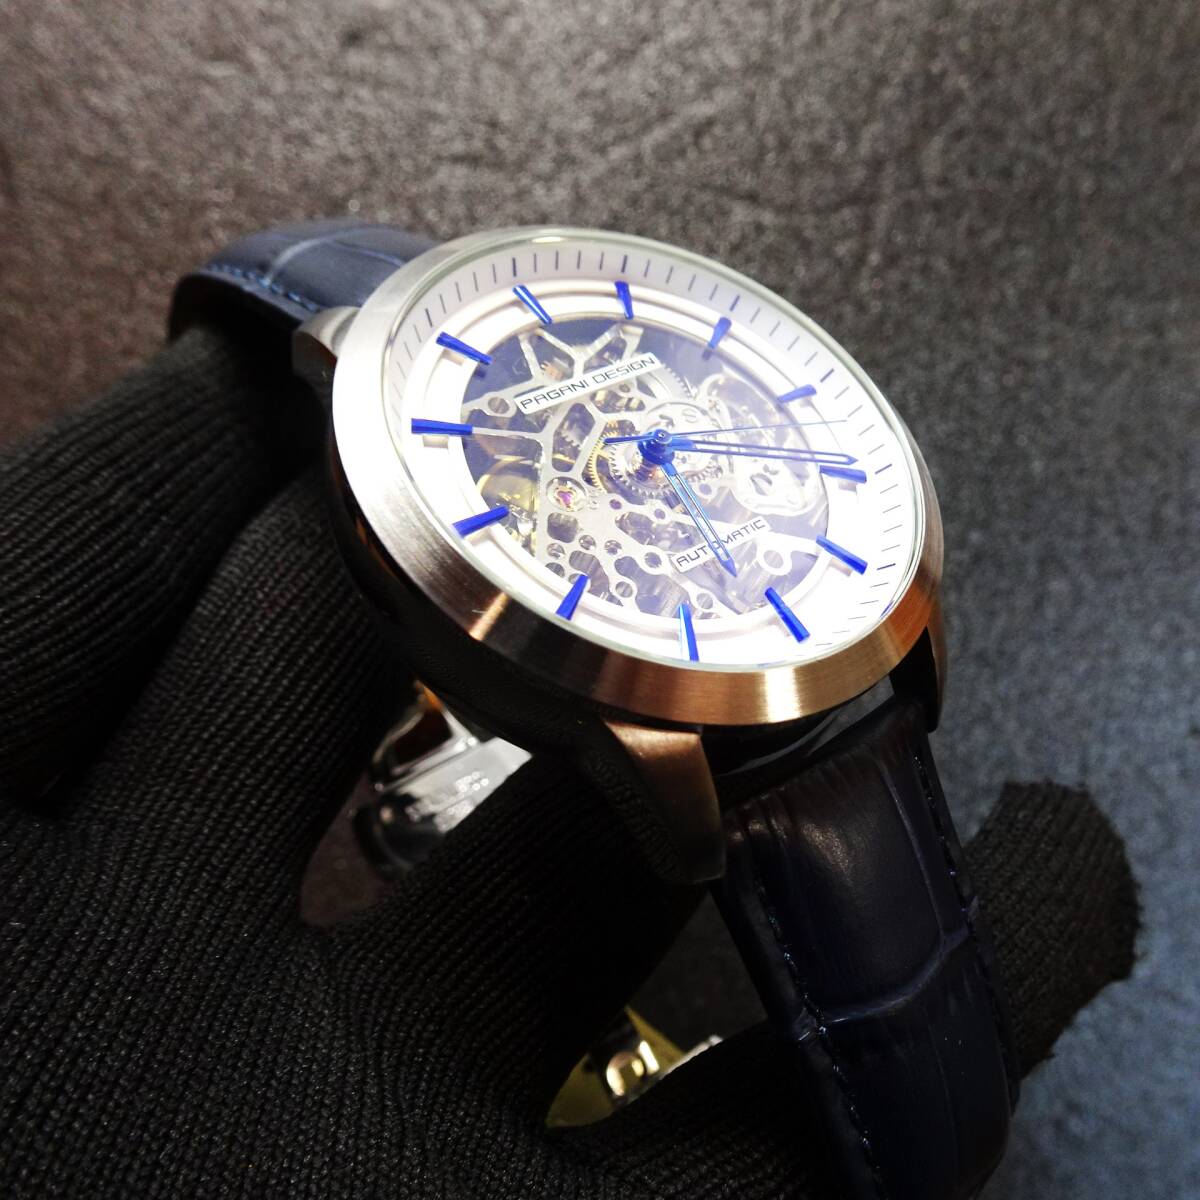 送料無料・新品・パガーニデザインPAGANI DESIGN腕時計メンズスケルトンメカニカルウォッチ自動巻きクロコ型押し本革腕時計PD-1638_画像4